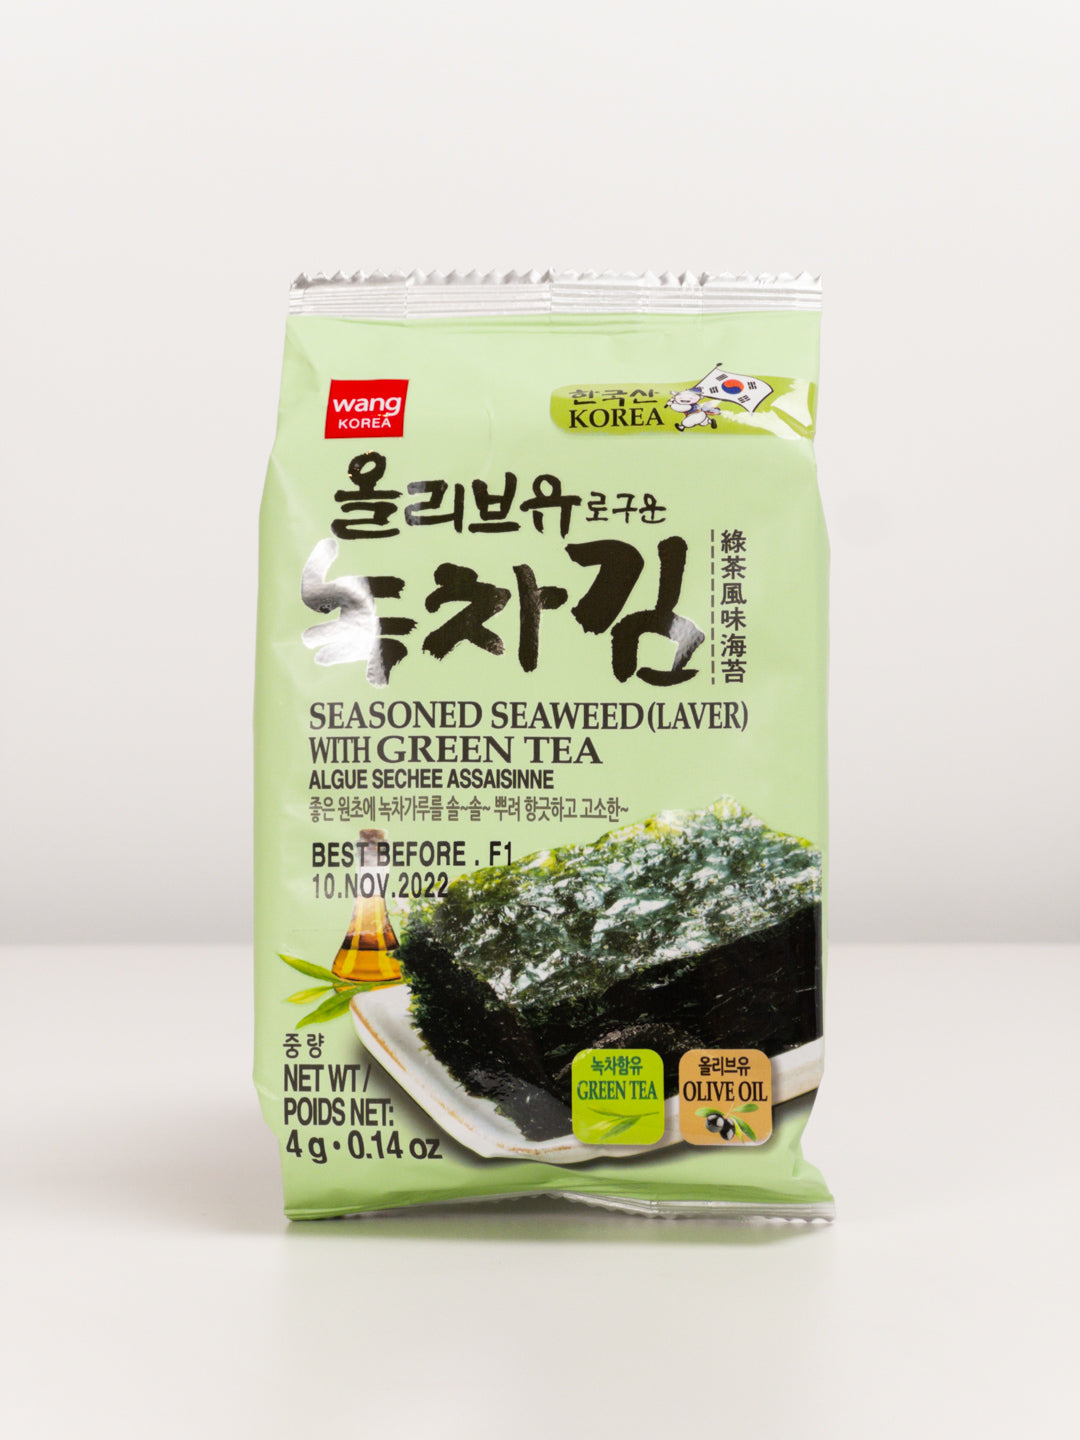 Wang Korea - Seasoned Seaweed w/ Green Tea